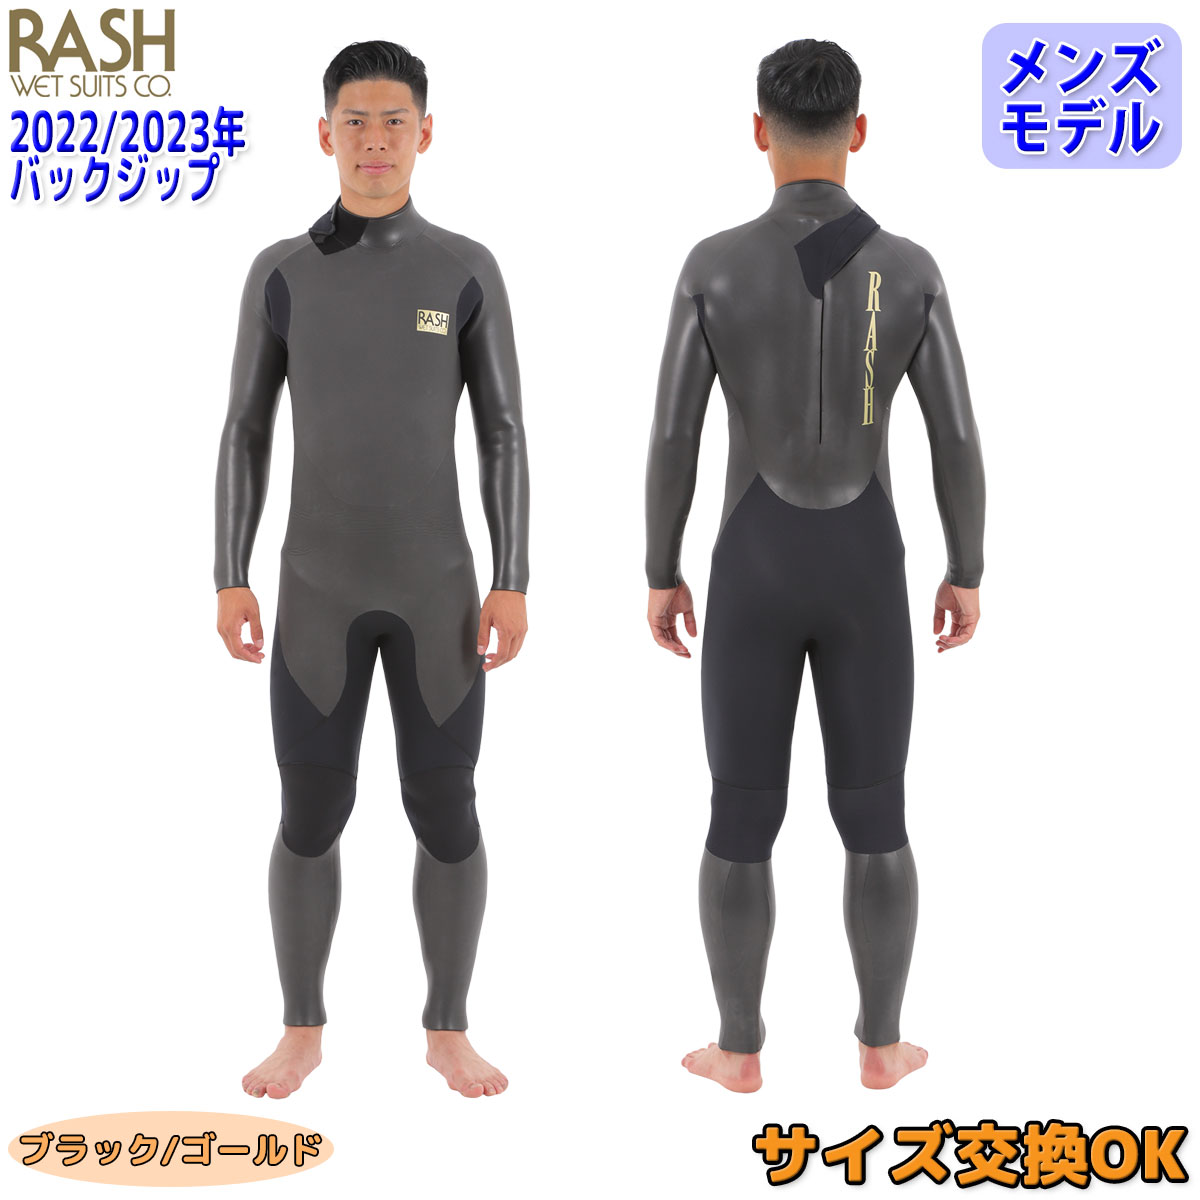 22-23 RASH WET SUITS CO. ラッシュ セミドライ ウェットスーツ バックジップ ウエットスーツ バリュー 冬用 メンズ  2022年/2023年 DRK素材仕様 日本正規品